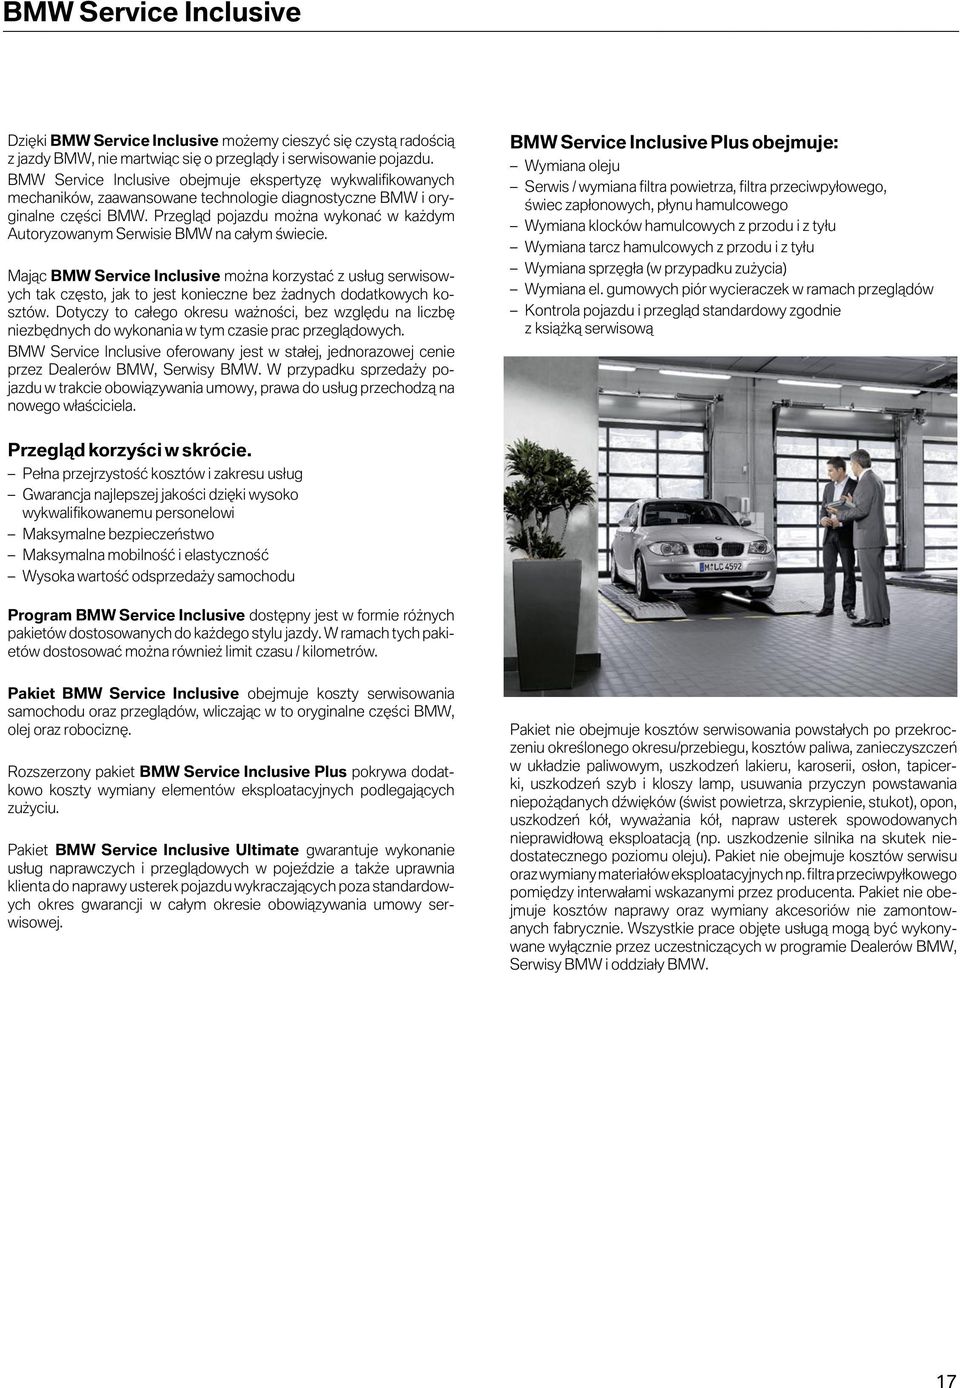 Przegląd pojazdu można wykonać w każdym Autoryzowanym Serwisie BMW na całym świecie.